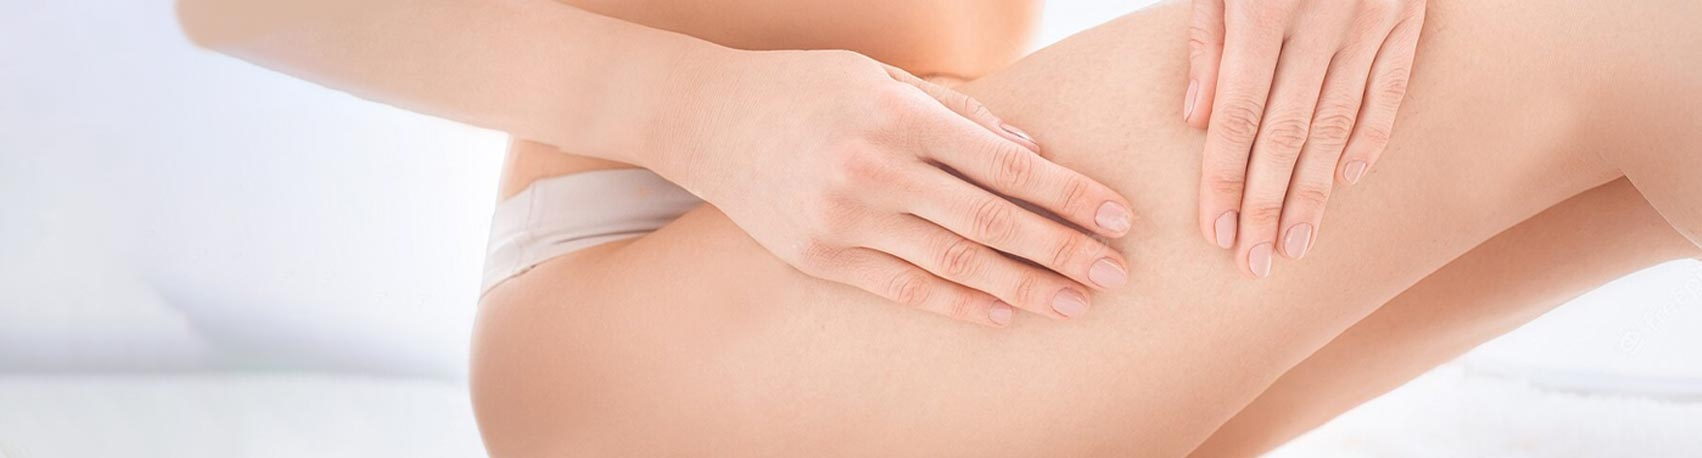 Cellulite : les soins, crèmes et massages anti-cellulite